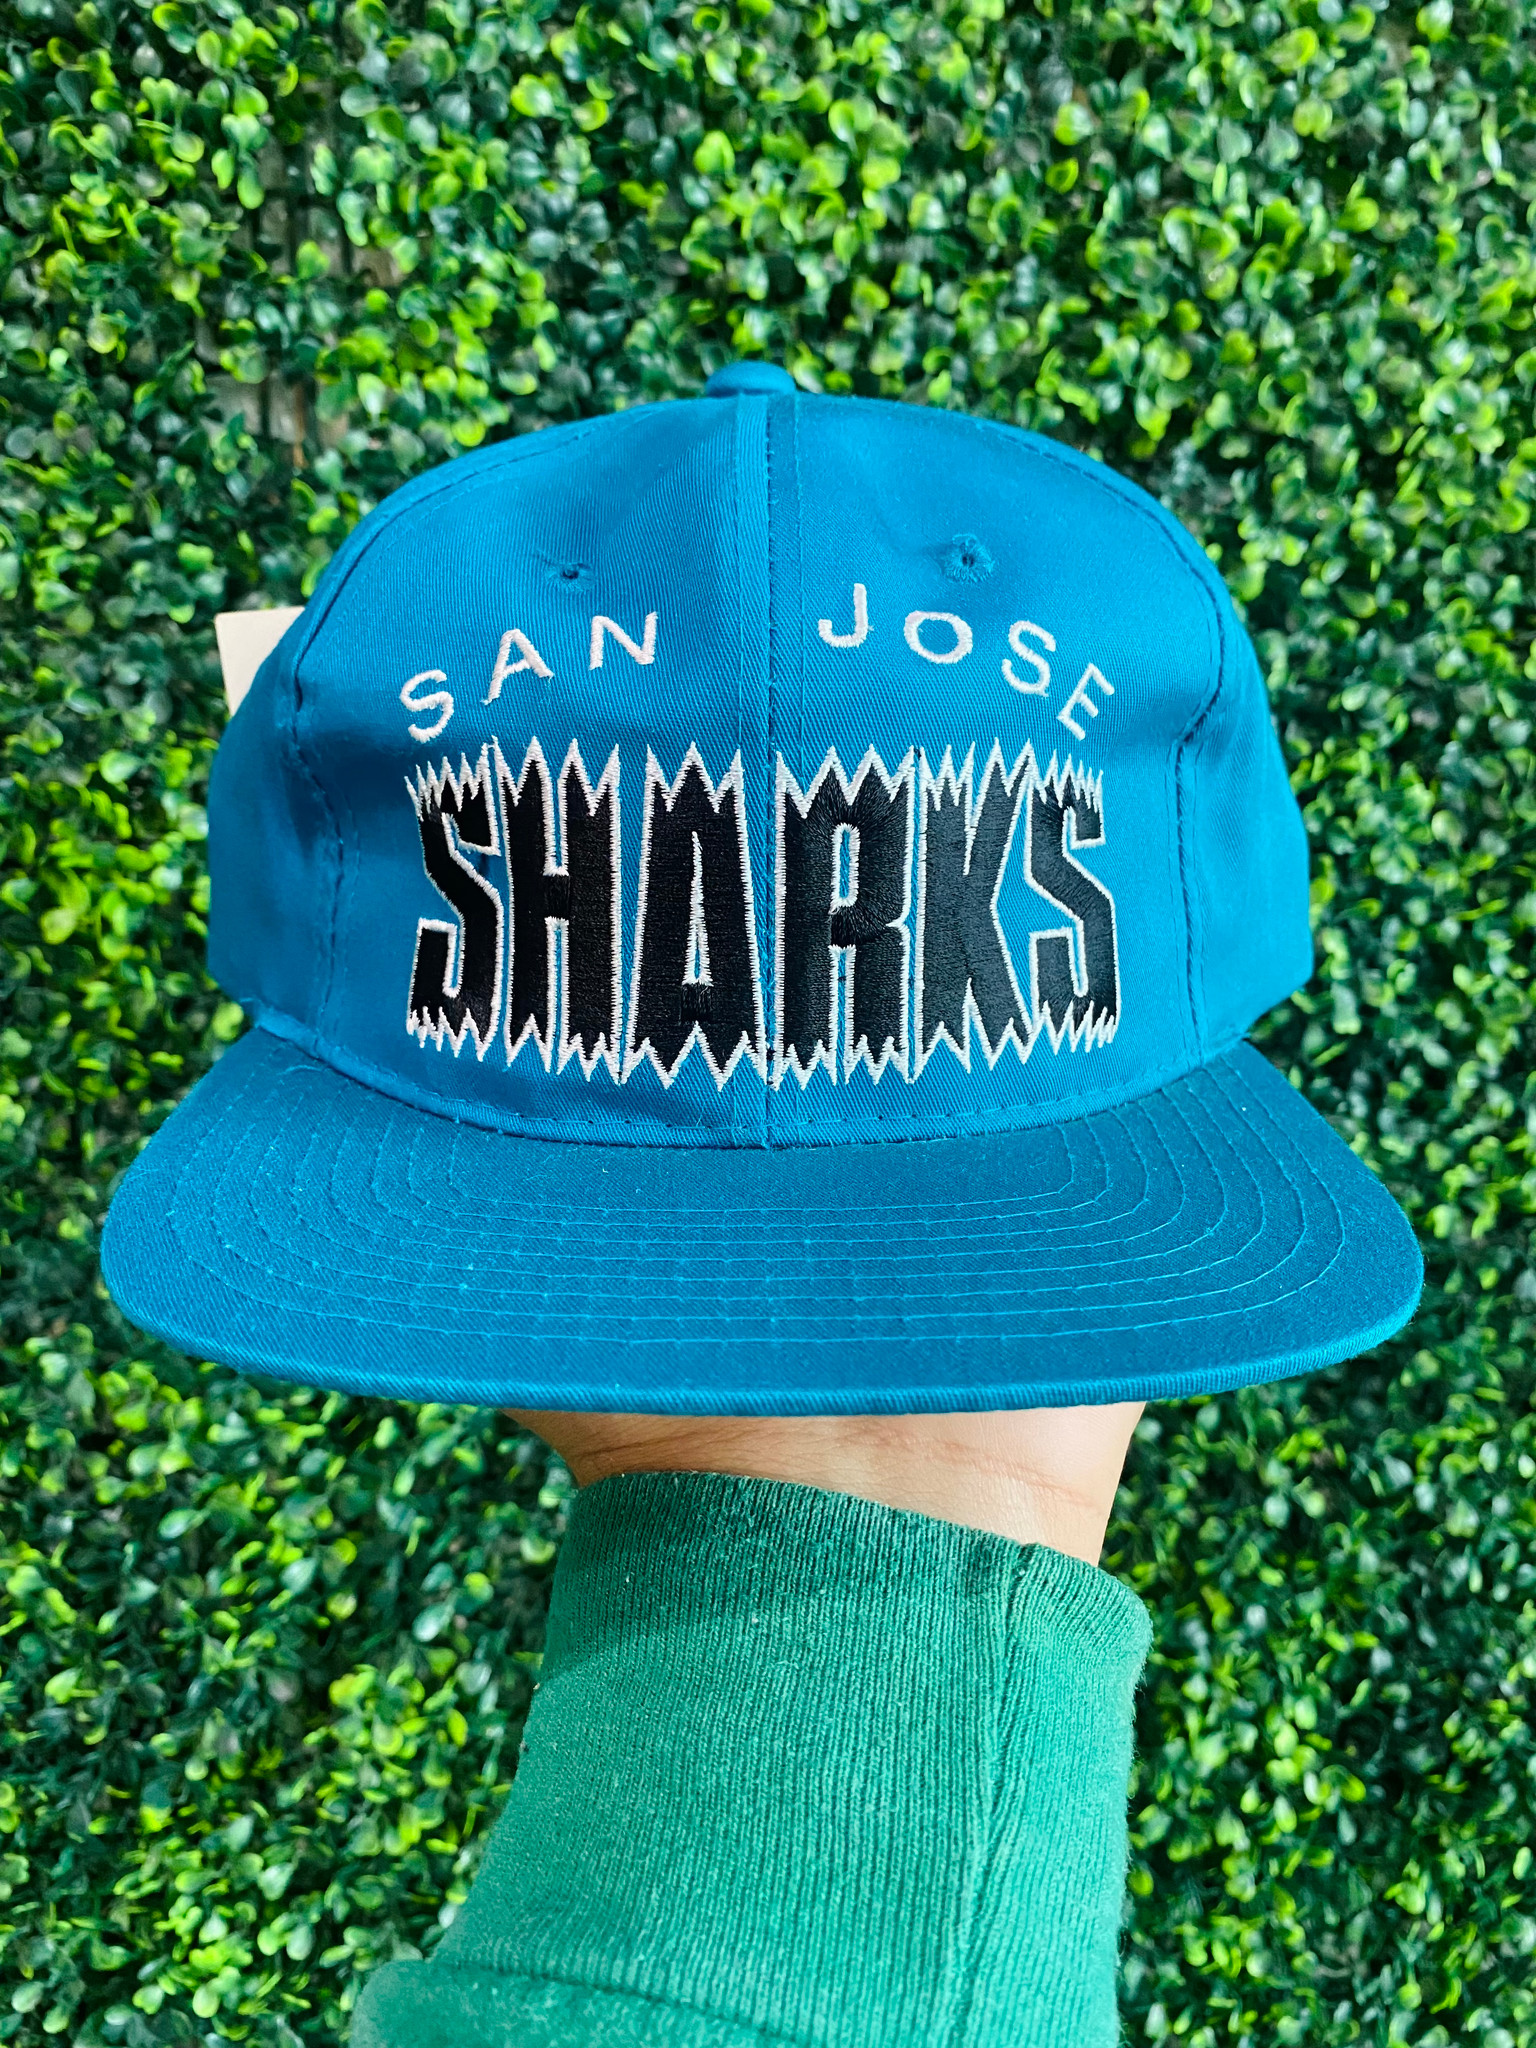 Vintage San Jose Sharks SNAP BACK HAT Baseball Hat Cap